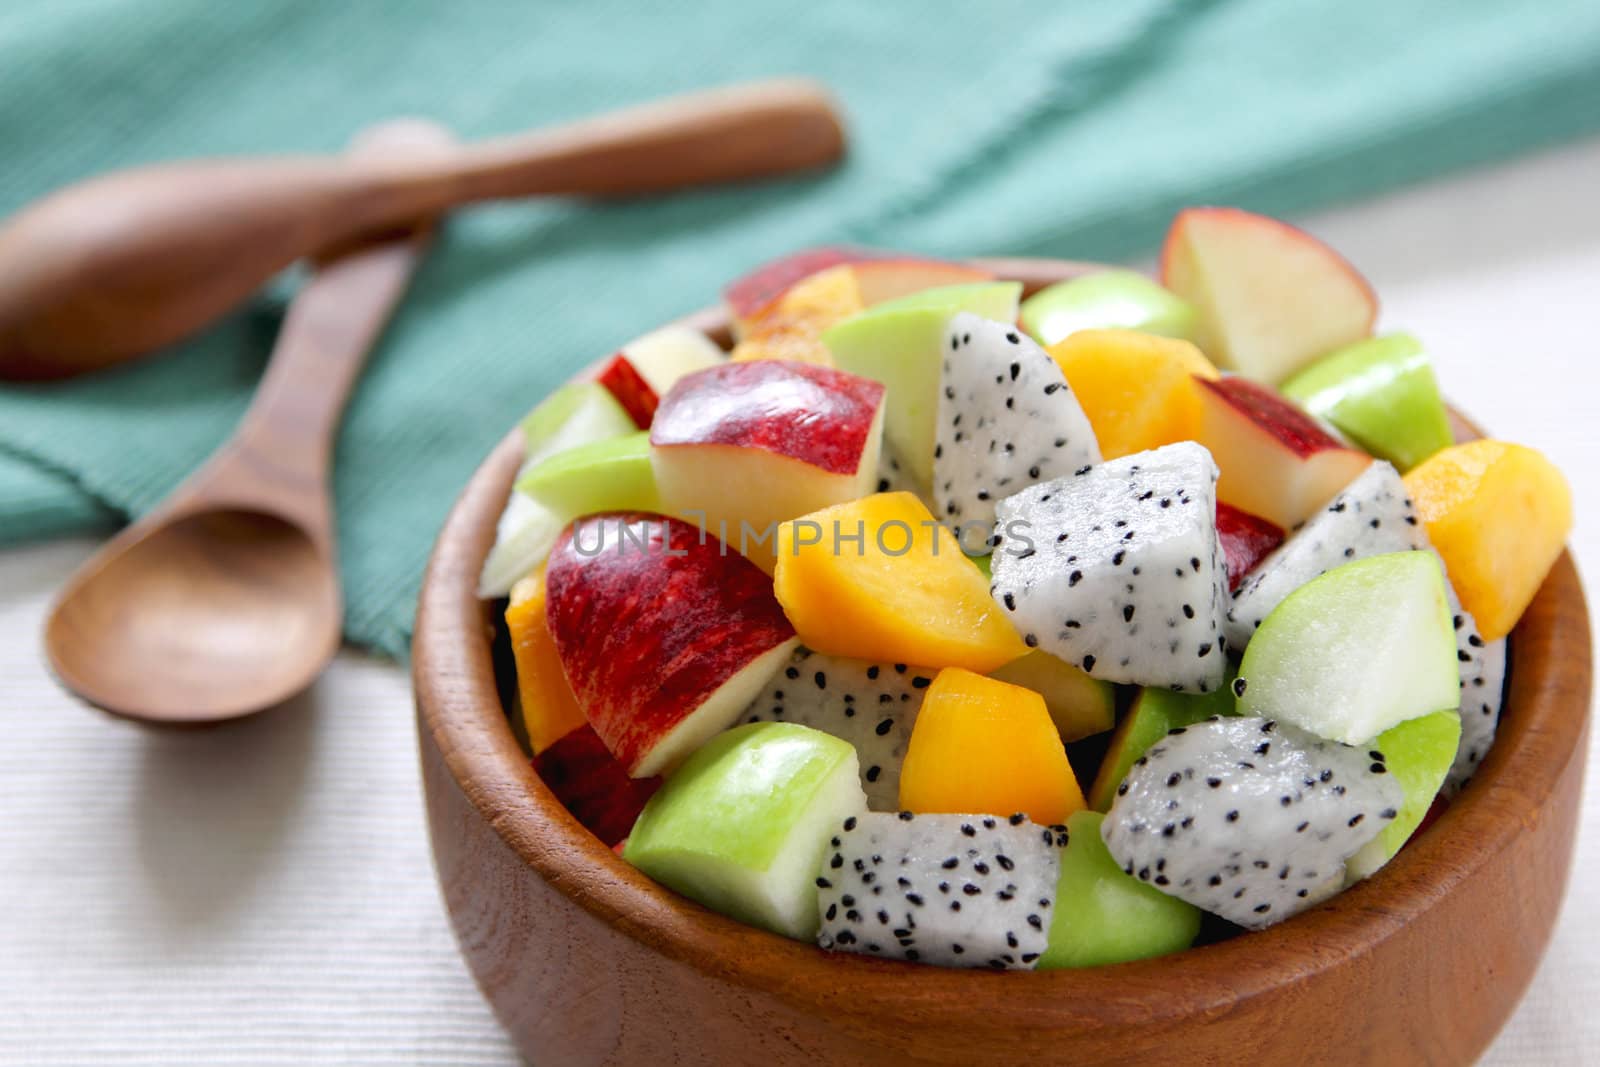 Fruit salad  [ varietie of fruit salad in a wood bowl ]